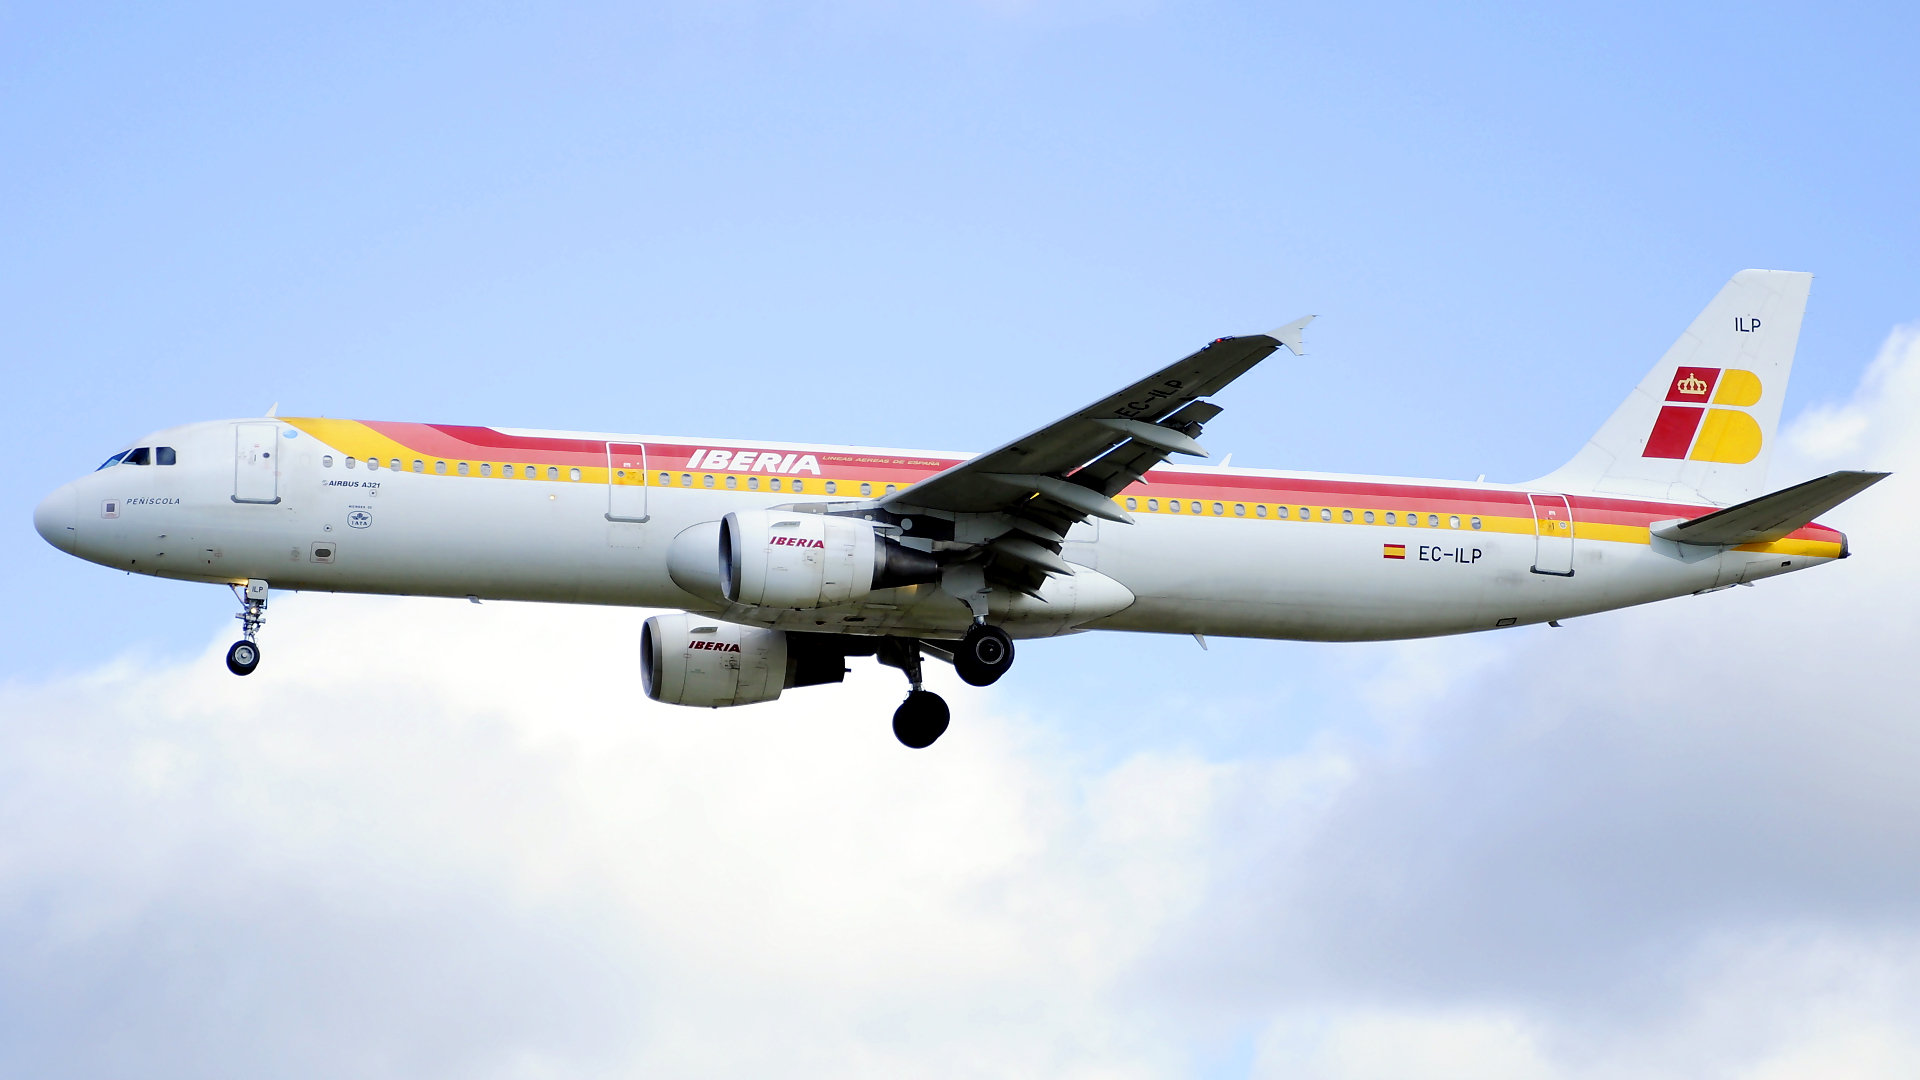 EC-ILP ✈ Iberia Airlines Airbus 321-211 @ London-Heathrow